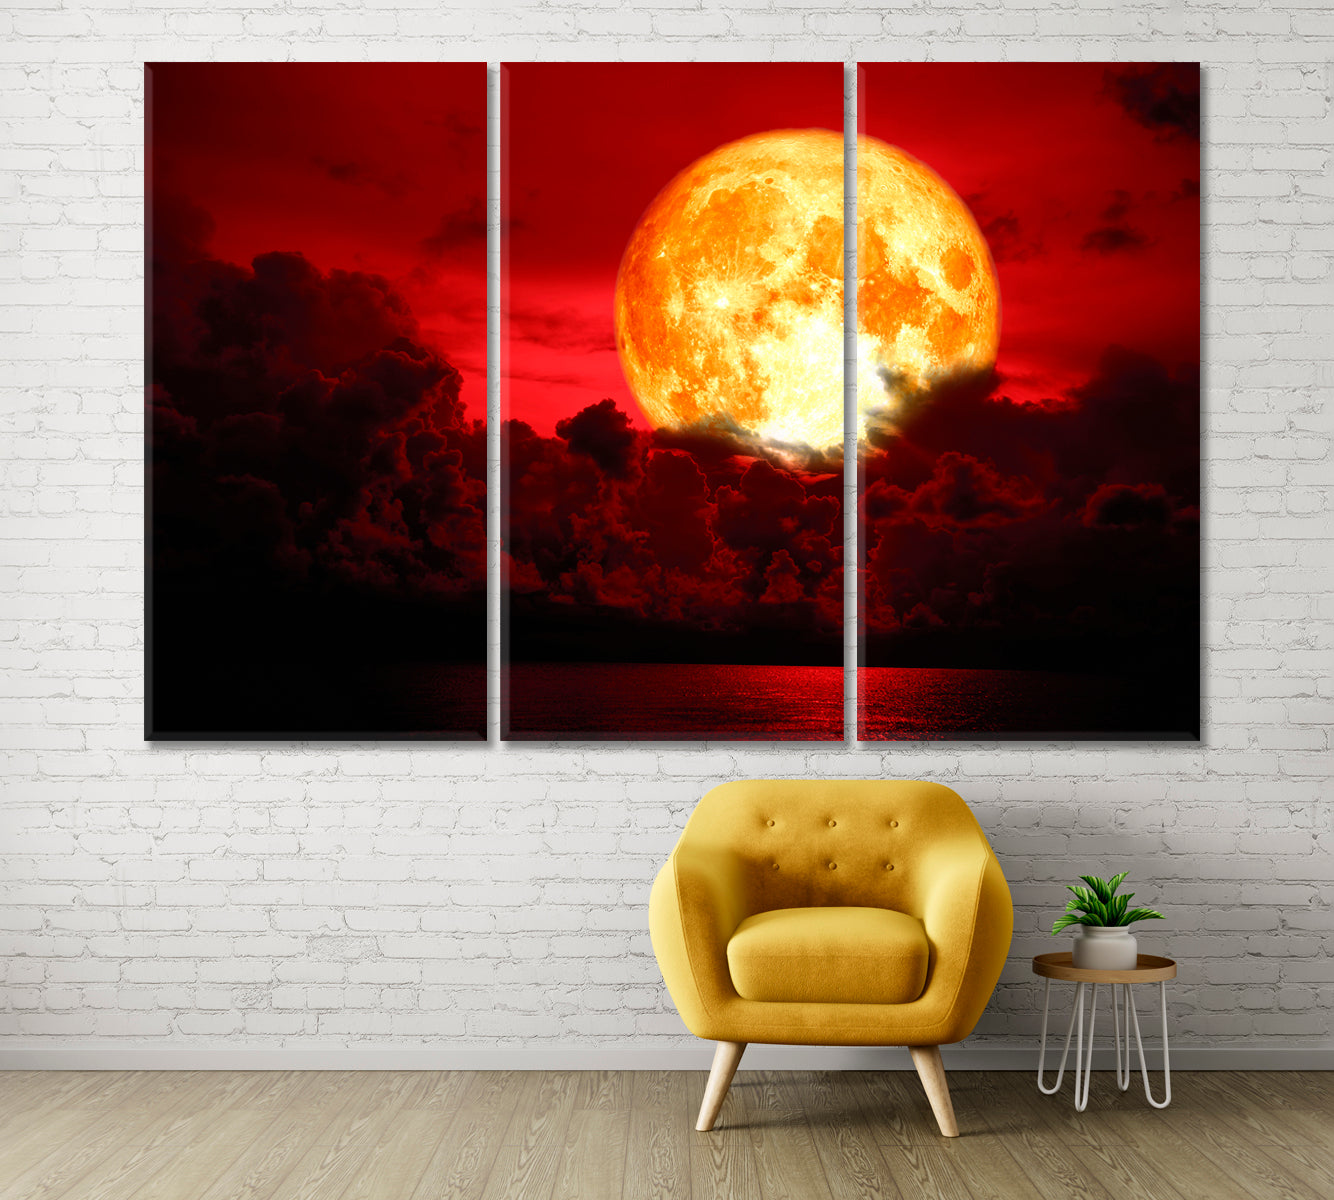 Eclipse Full Blood Moon Fabulous Landscape Scenery Landscape Fine Art Print Artesty 3 panels 36" x 24" 